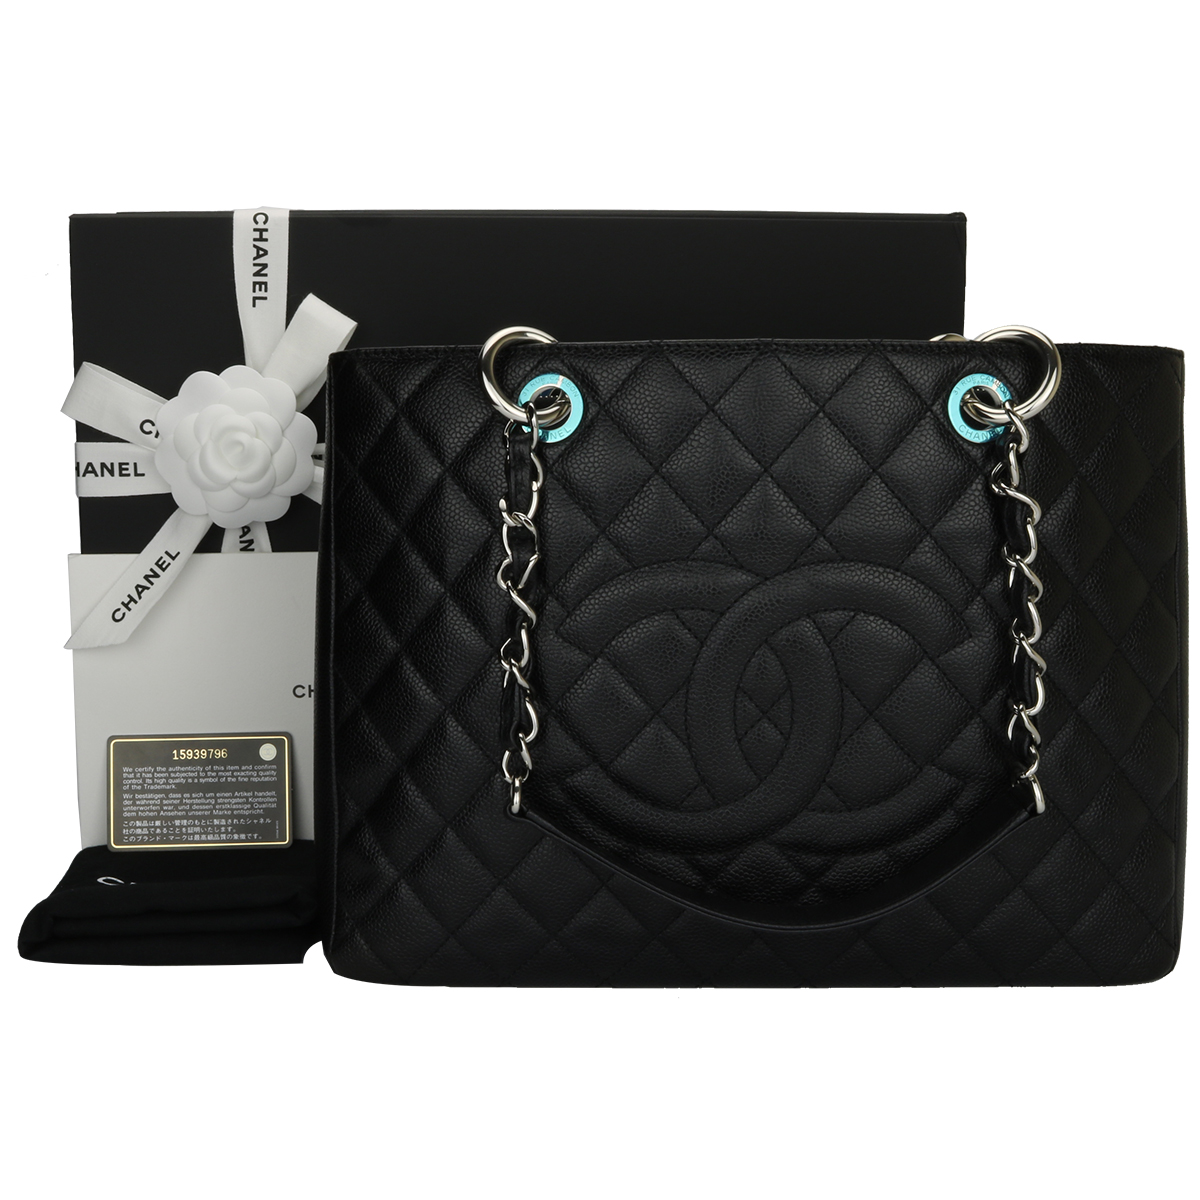 CHANEL Grand Shopping Tote (GST) Black Caviar Silver Hardware 2011 -  BoutiQi Bags